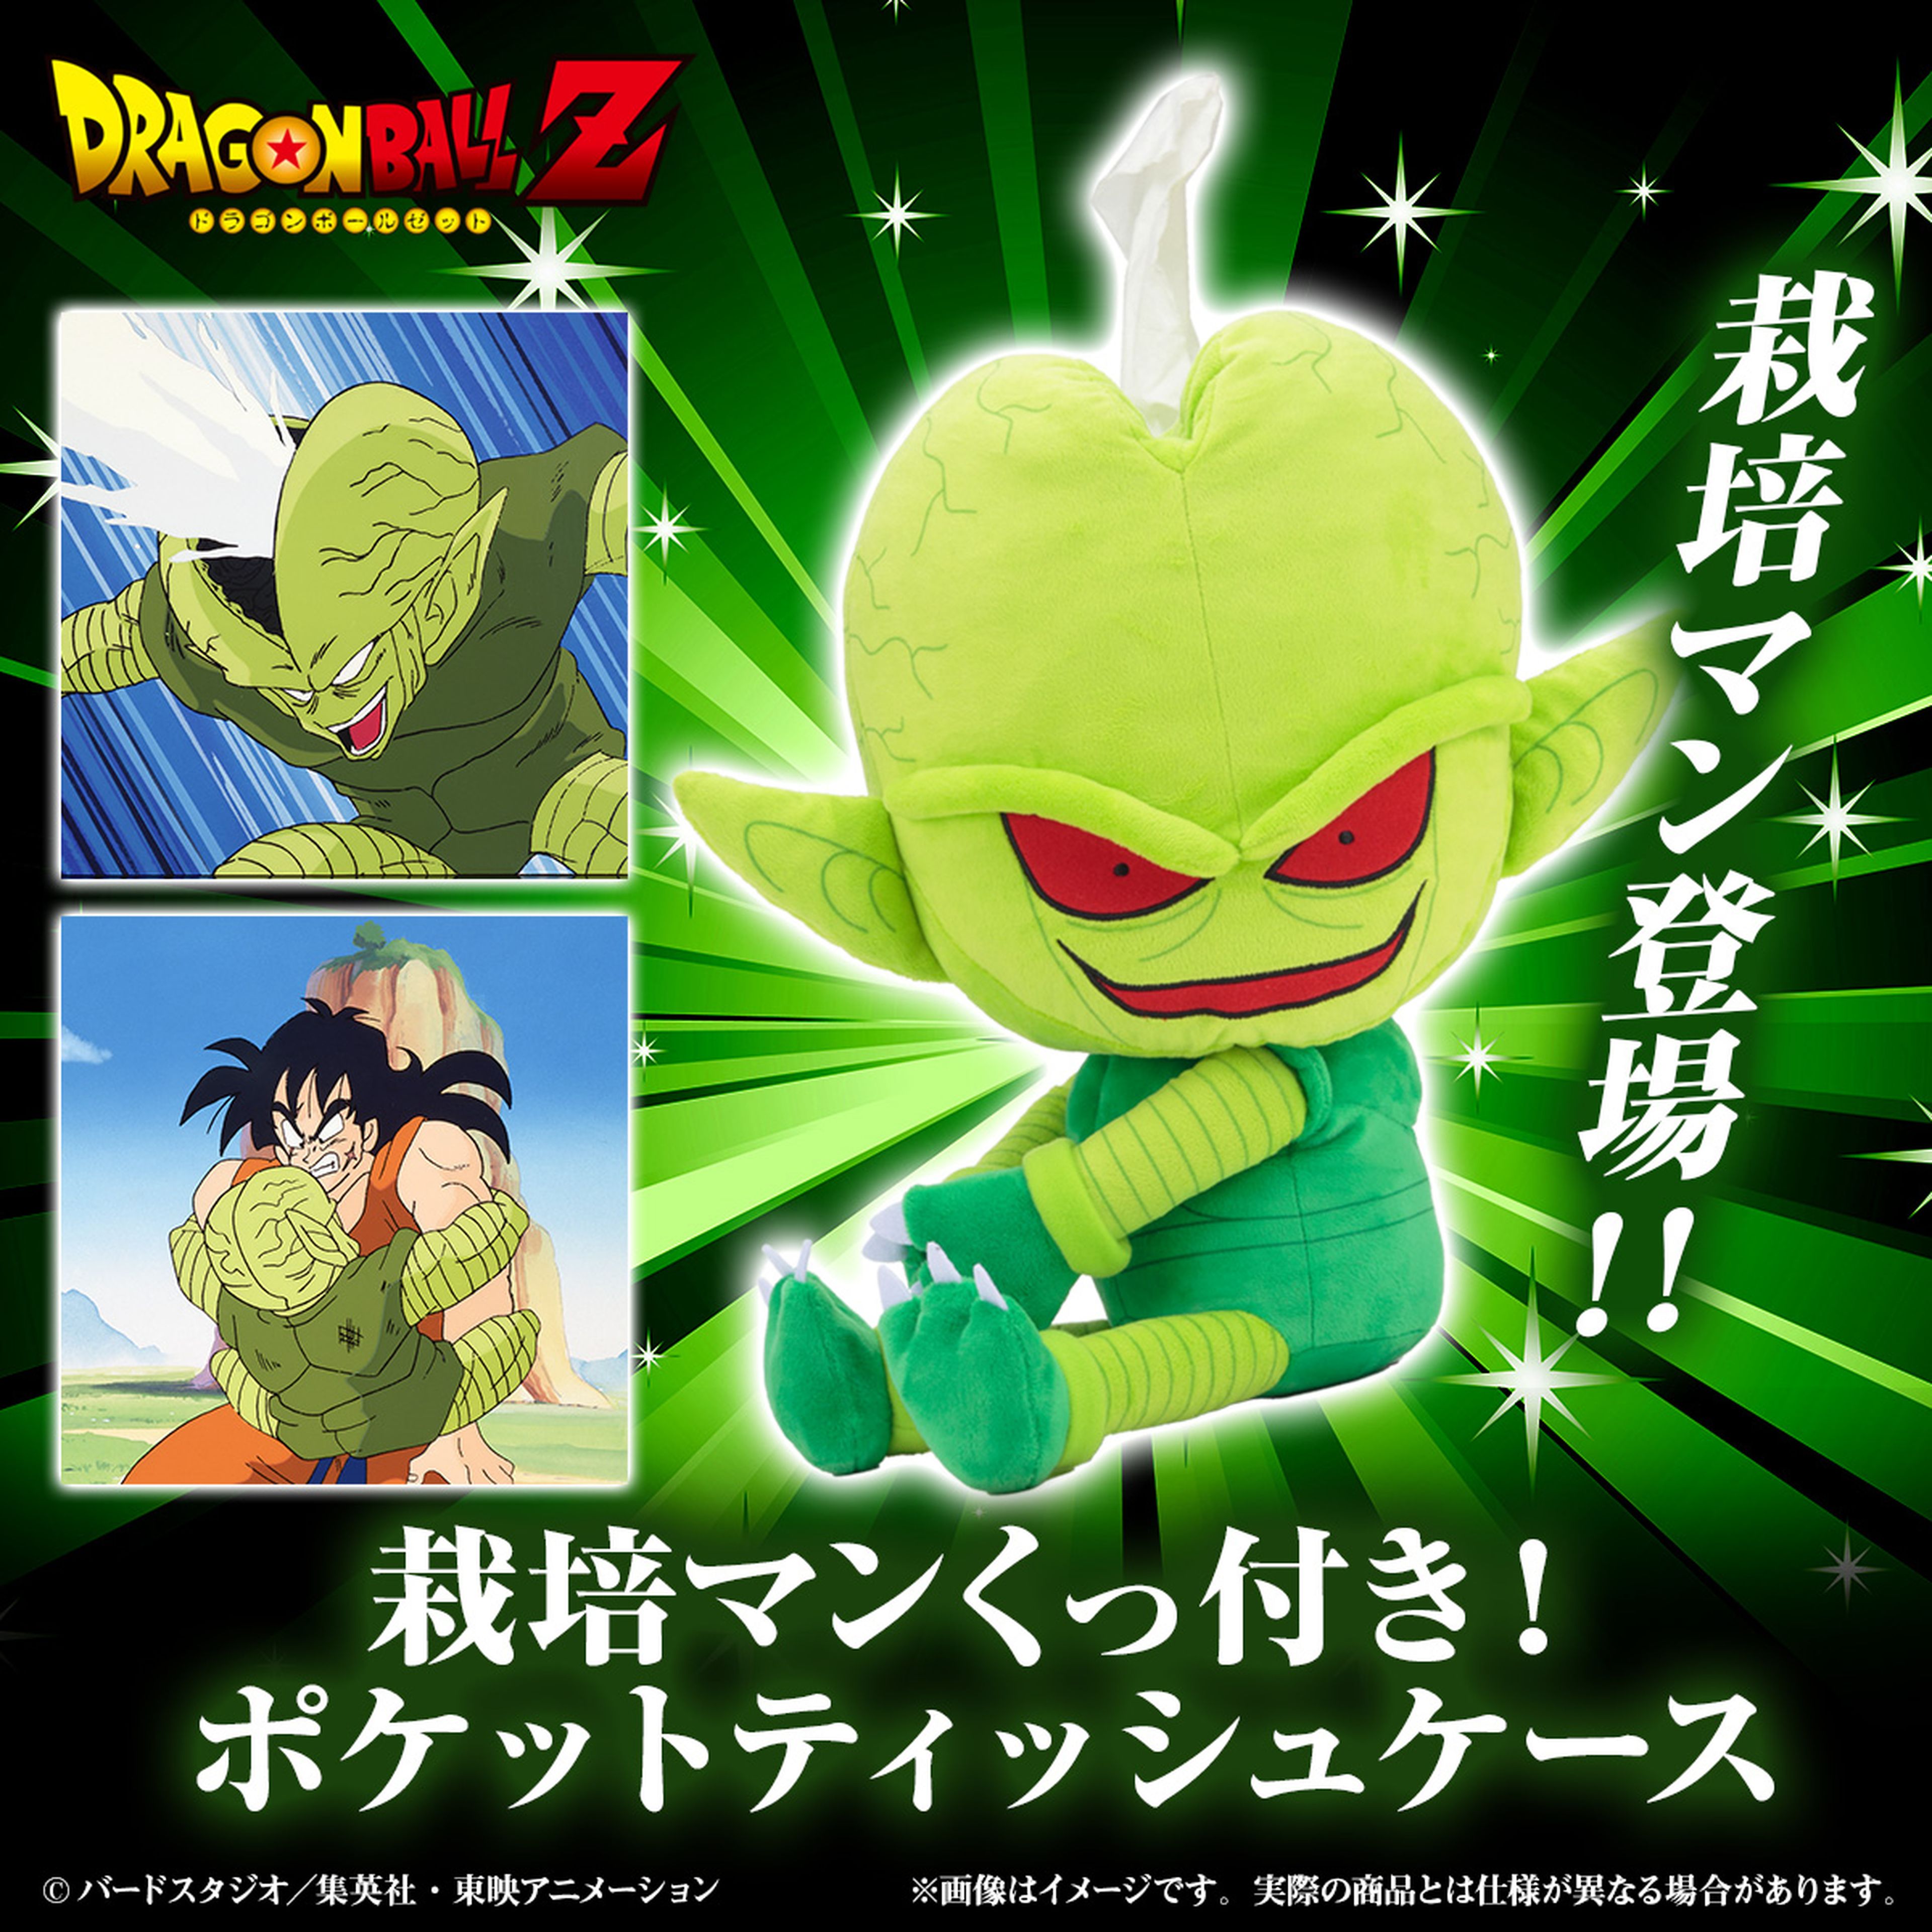 Dragon Ball Z - ¡La locura es real! Se acaba de anunciar el dispensador Saibaiman oficial de pañuelos de papel 